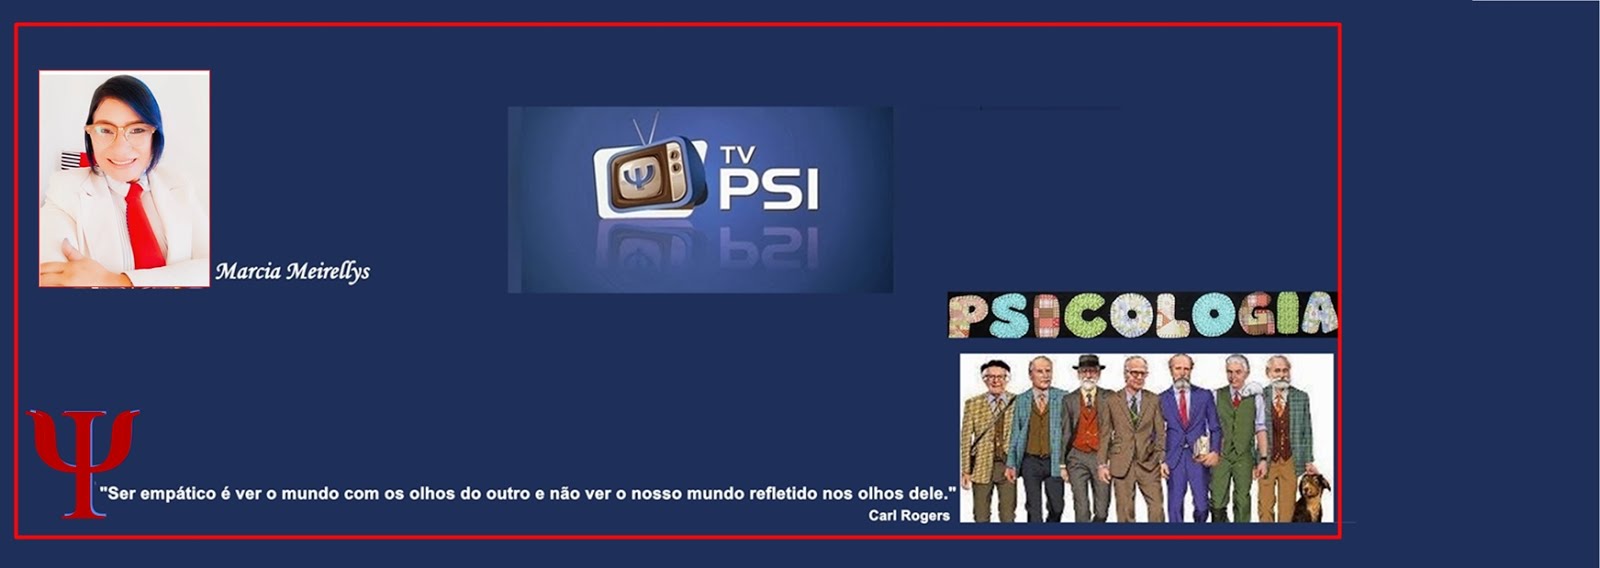 TV PSI   